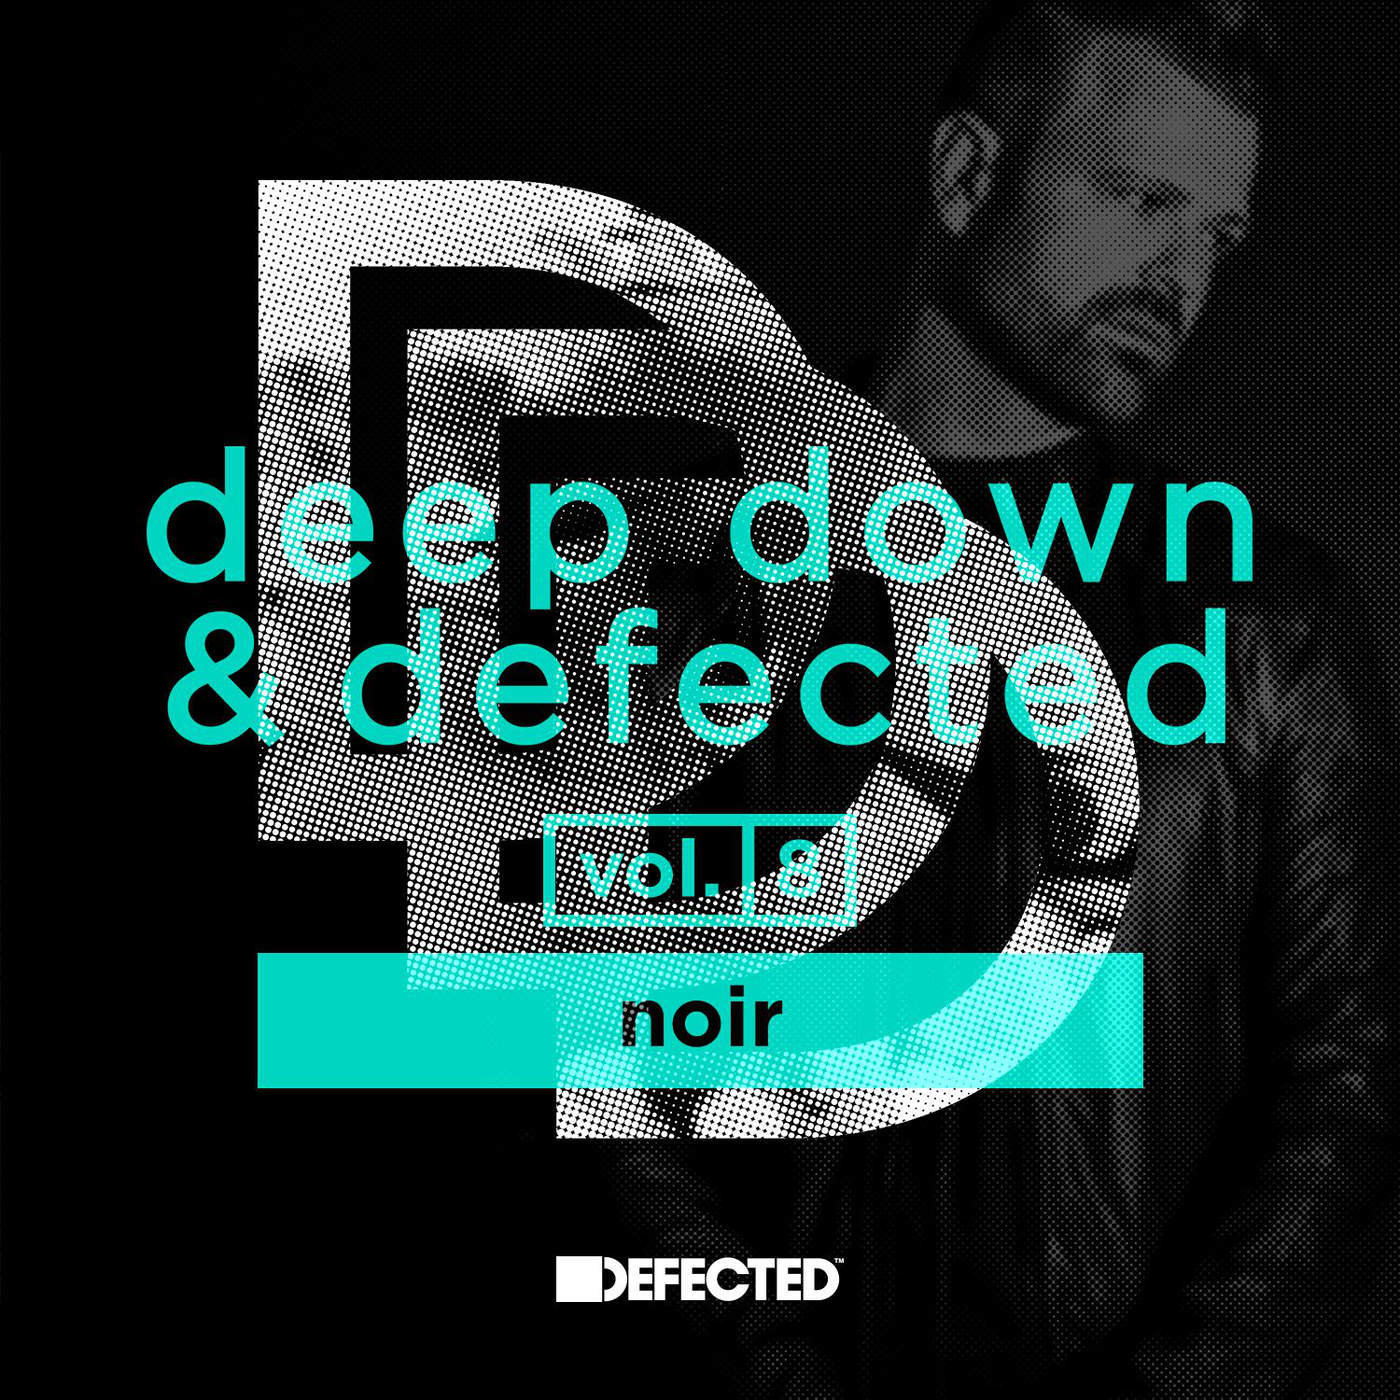 VA - Deep Down & Defected Vol. 8 Noir